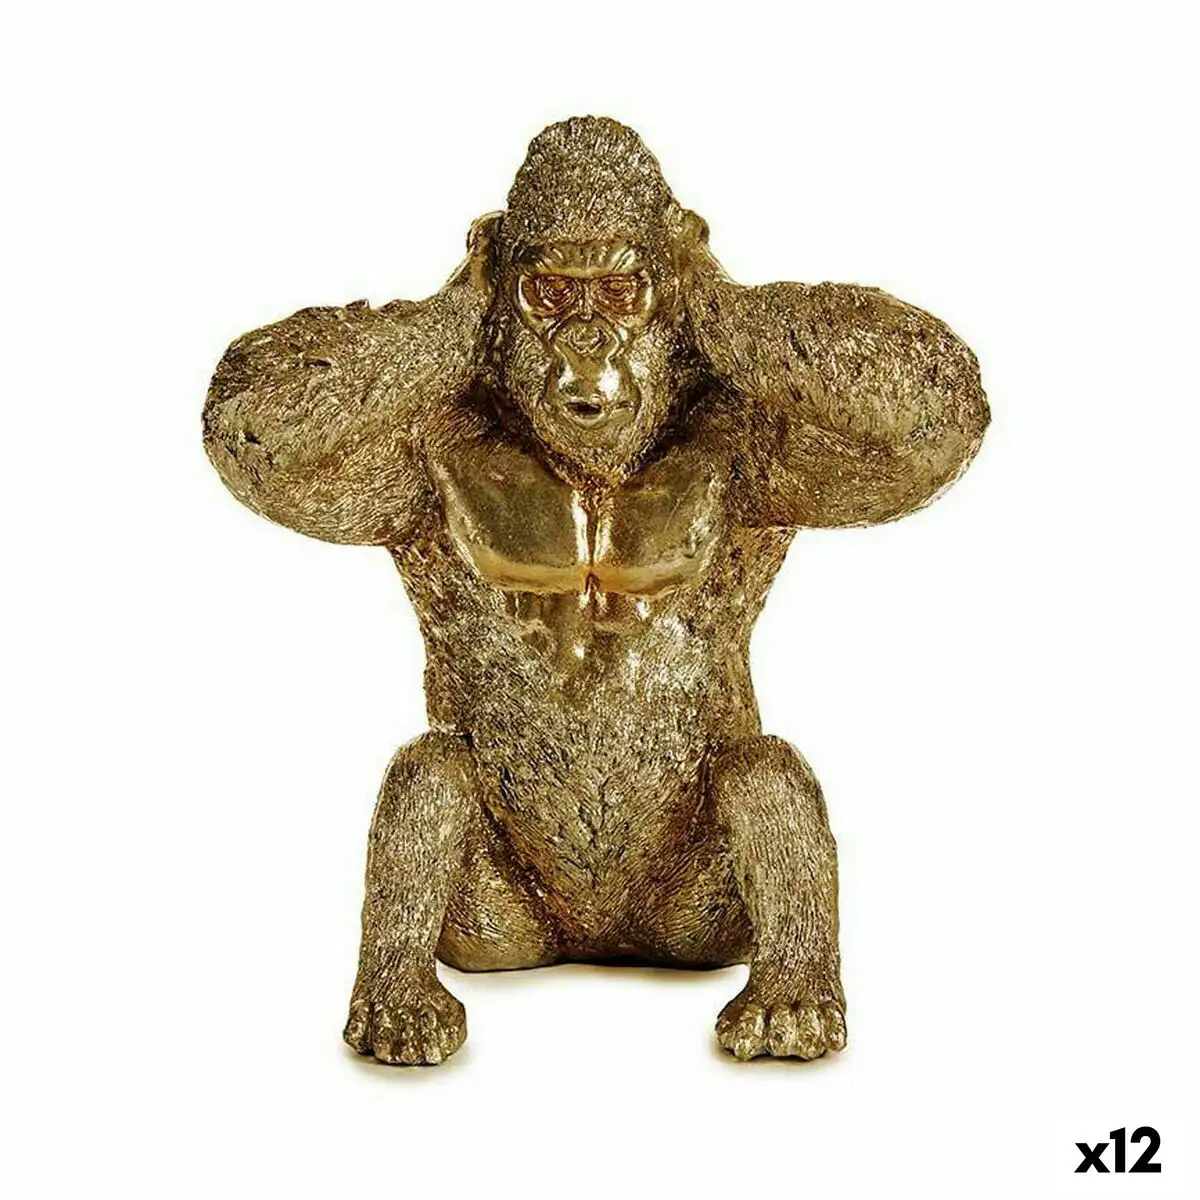 Figurine decorative gorille dore 10 x 18 x 17 cm 12 unites _2904. DIAYTAR SENEGAL - Là où Chaque Produit a son Propre Éclat. Explorez notre boutique en ligne et trouvez des articles qui ajoutent de la brillance à votre quotidien.